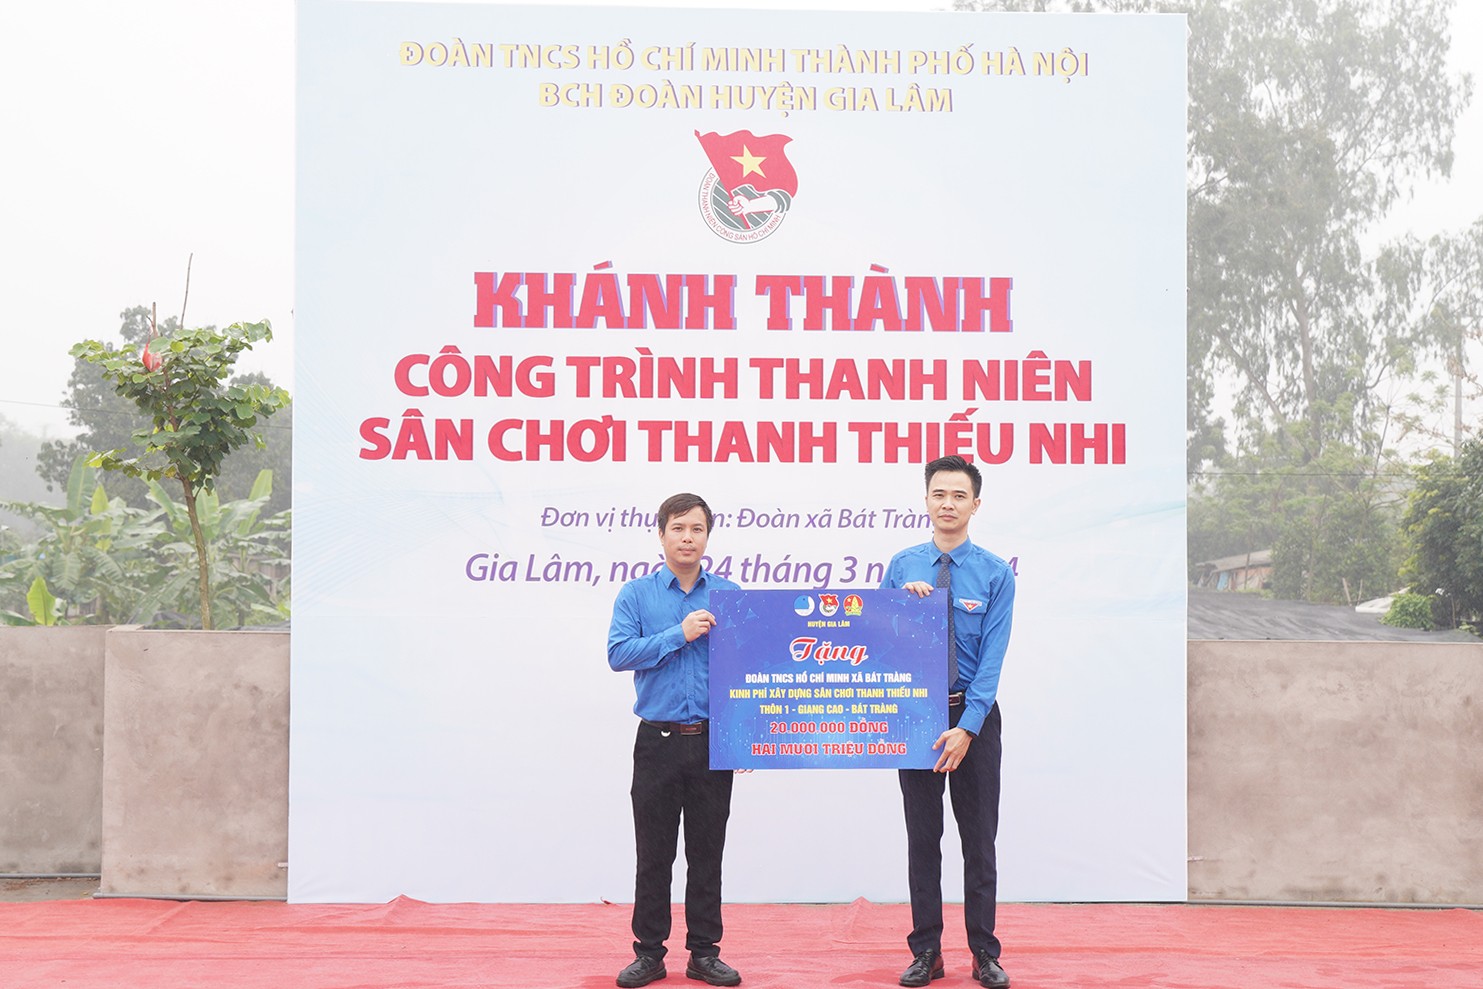 Huyện đoàn Gia Lâm trao tặng biển tượng trưng kinh phí xây dựng sân chơi thiếu nhi cho Đoàn xã Bát Tràng